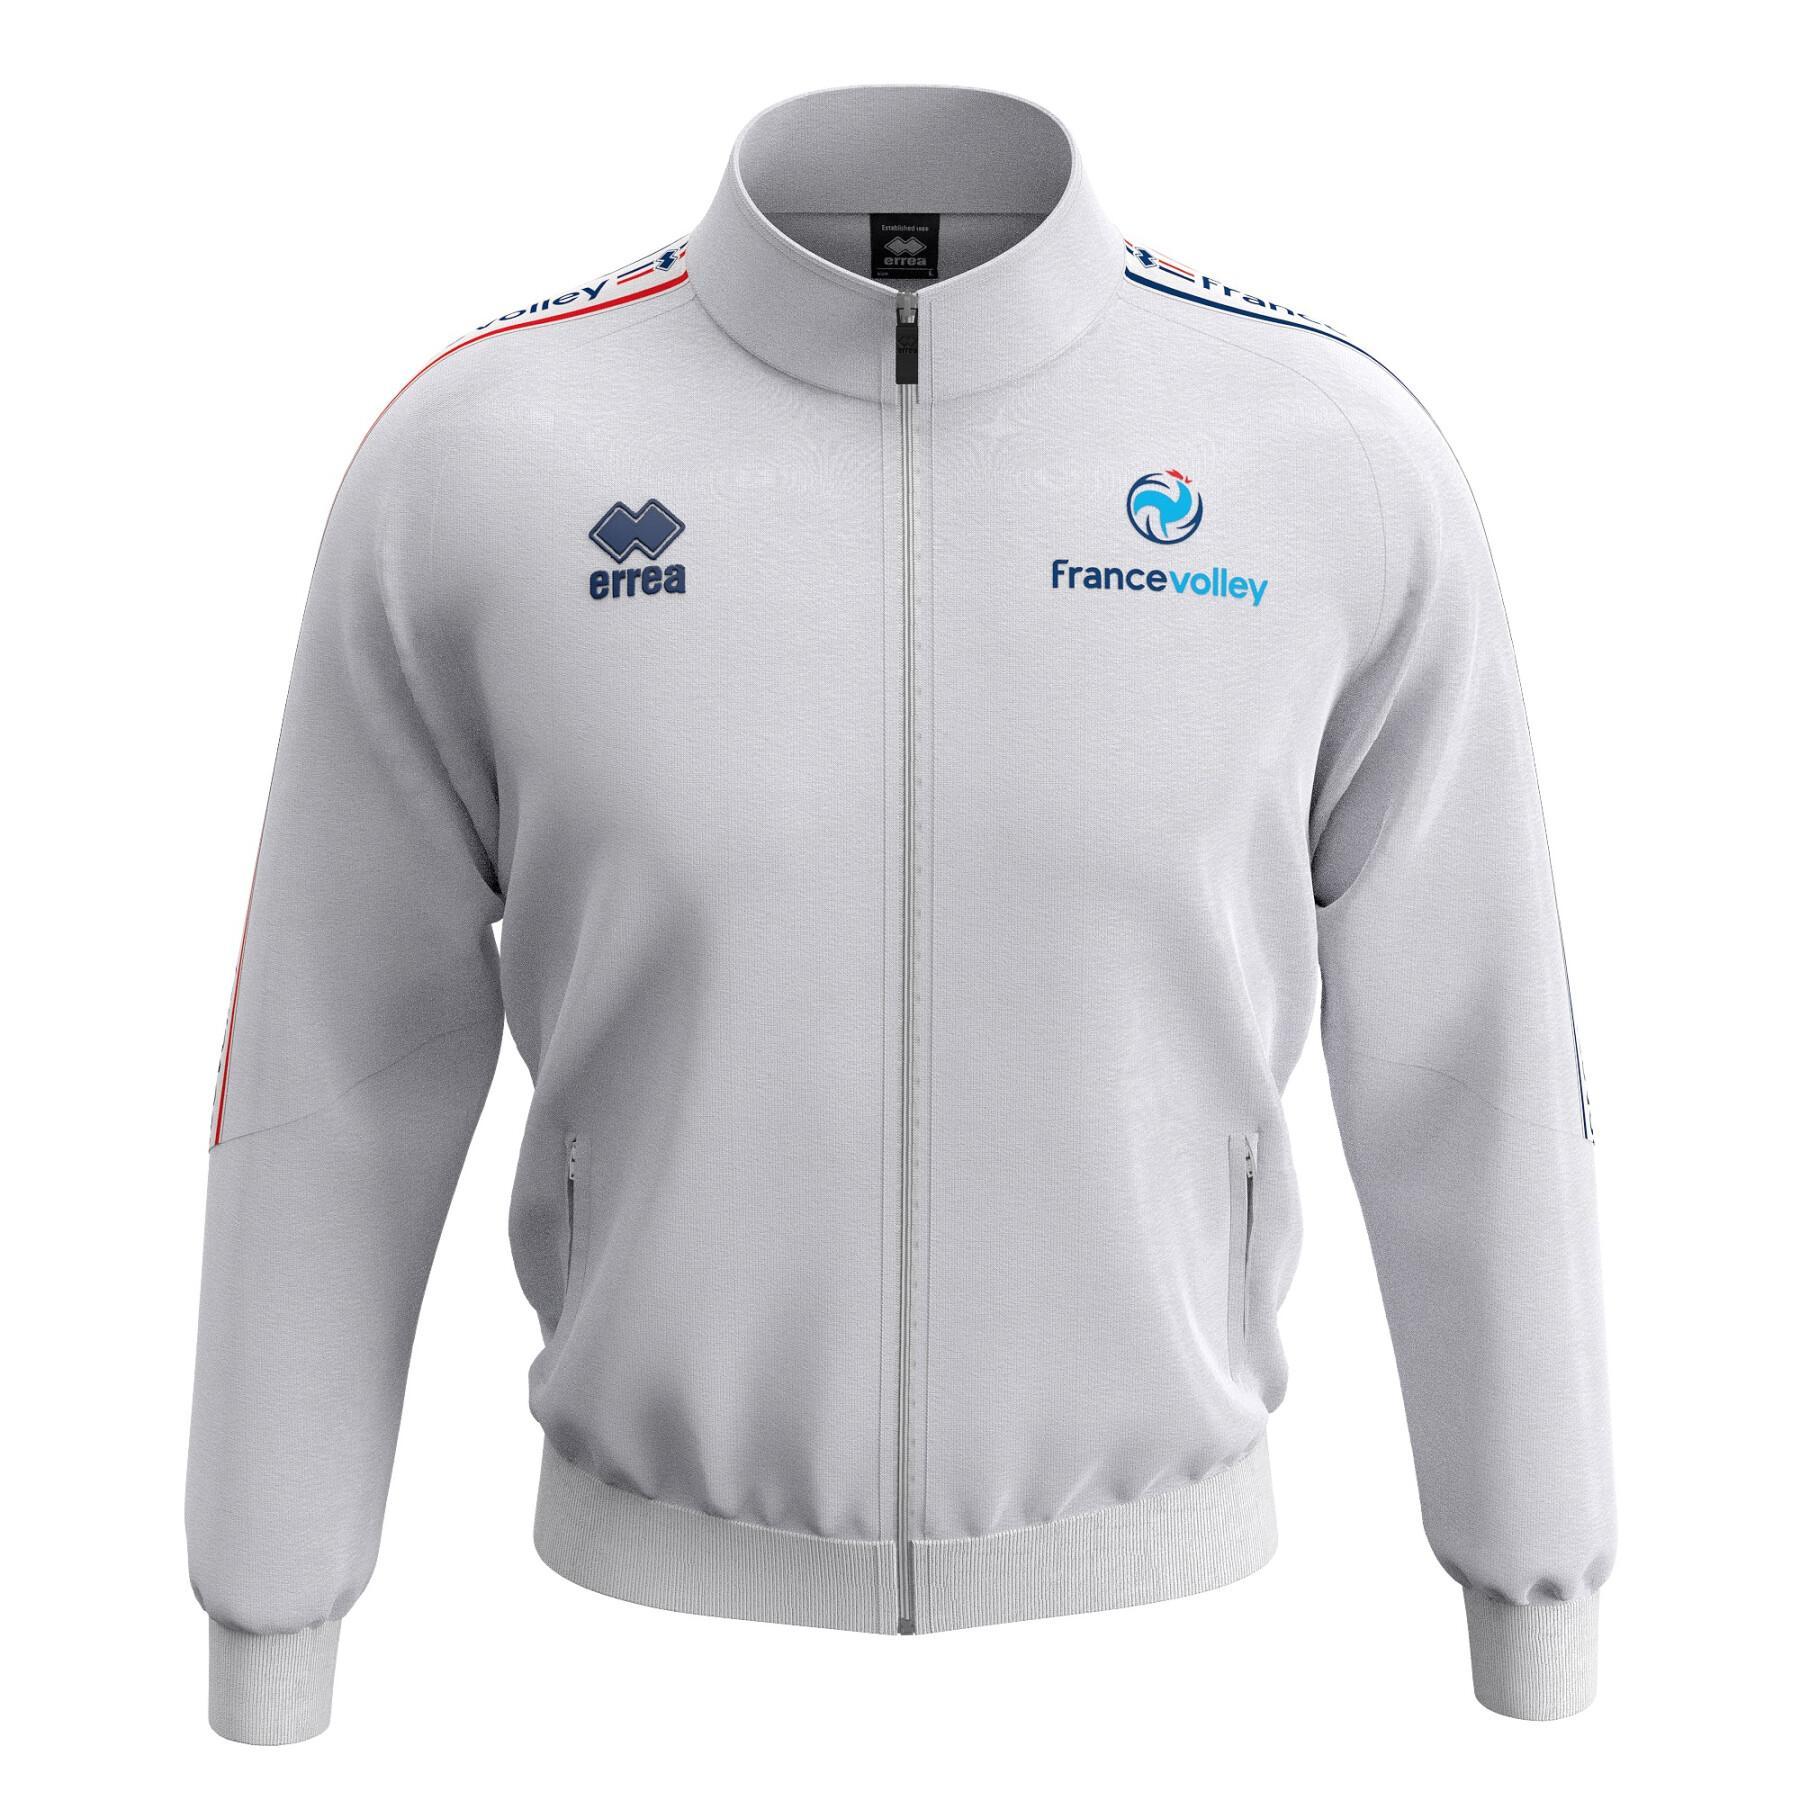 Spring 3.0 Team Women's Jacket van France 2020